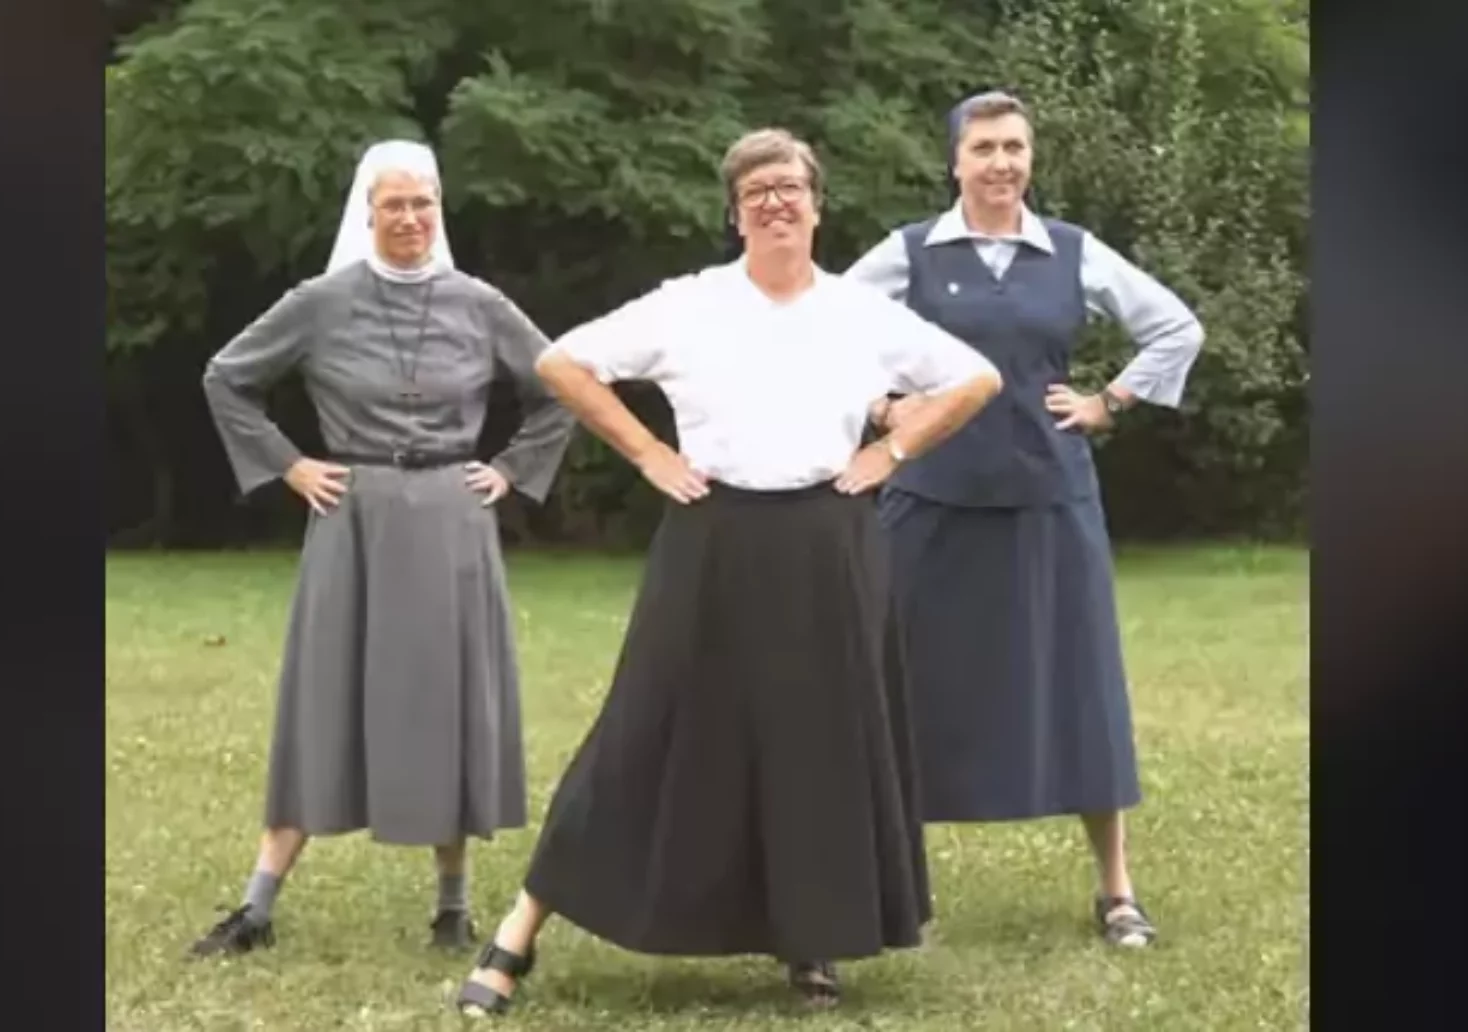 Bild auf 5min.at zeigt drei tanzende Ordensschwestern.